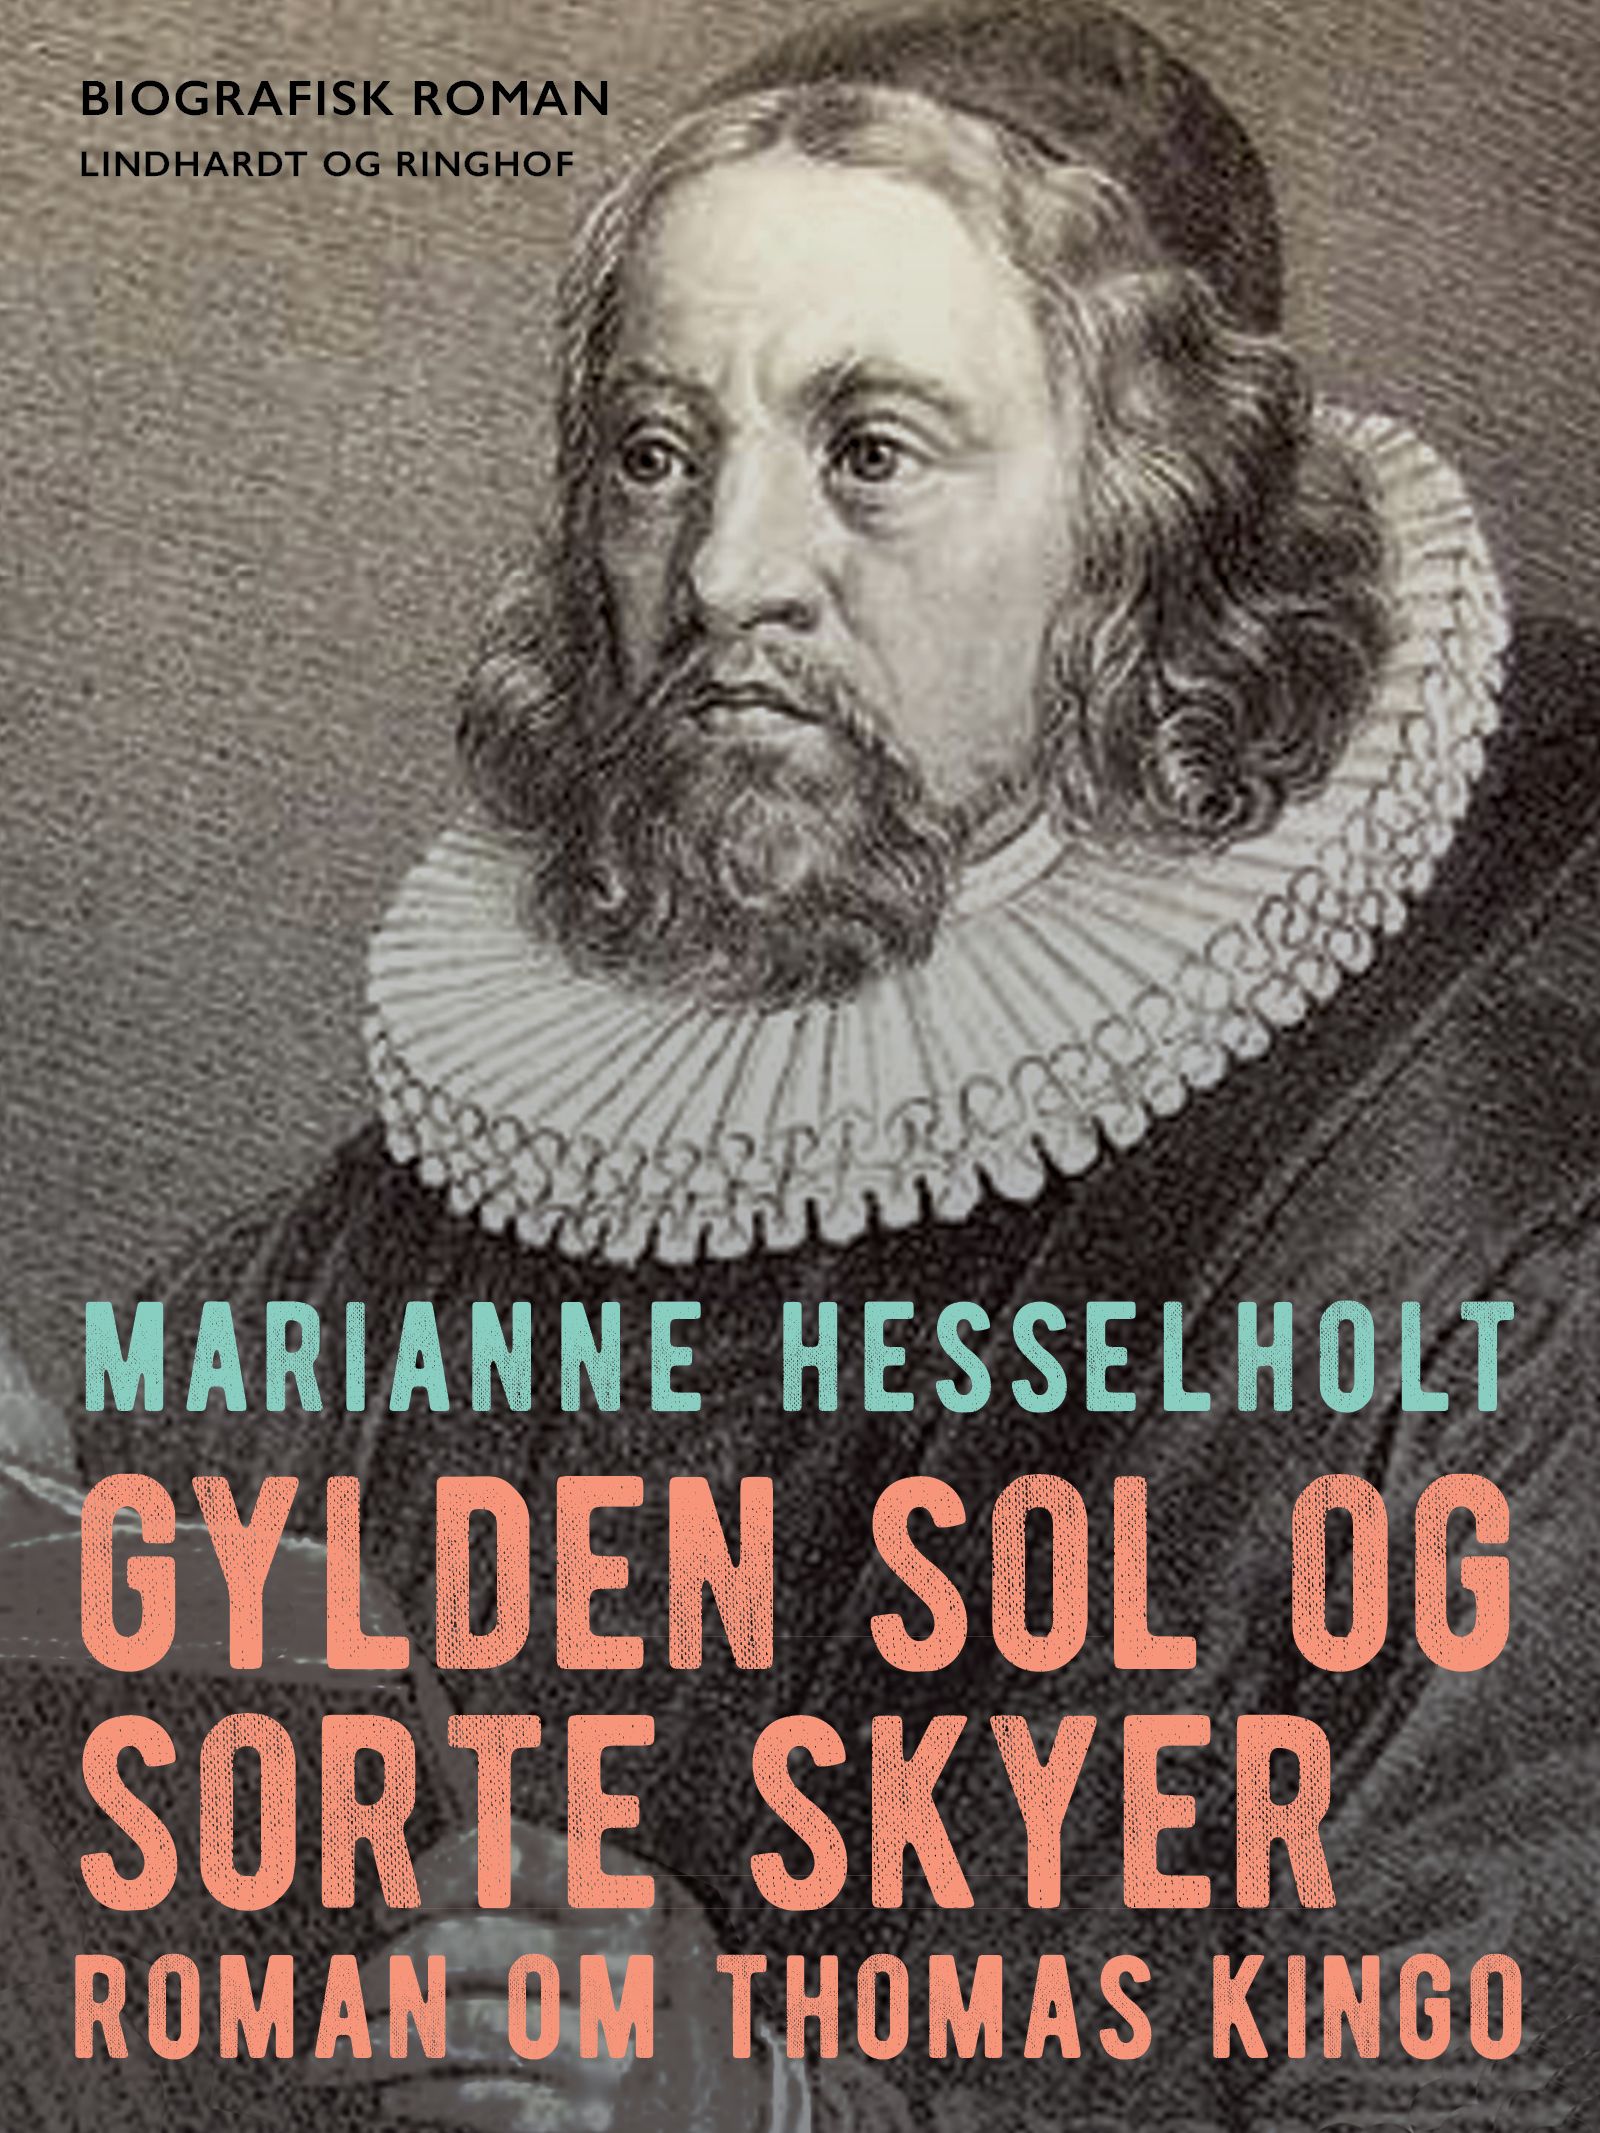 Gylden sol og sorte skyer, e-bok av Marianne Hesselholt